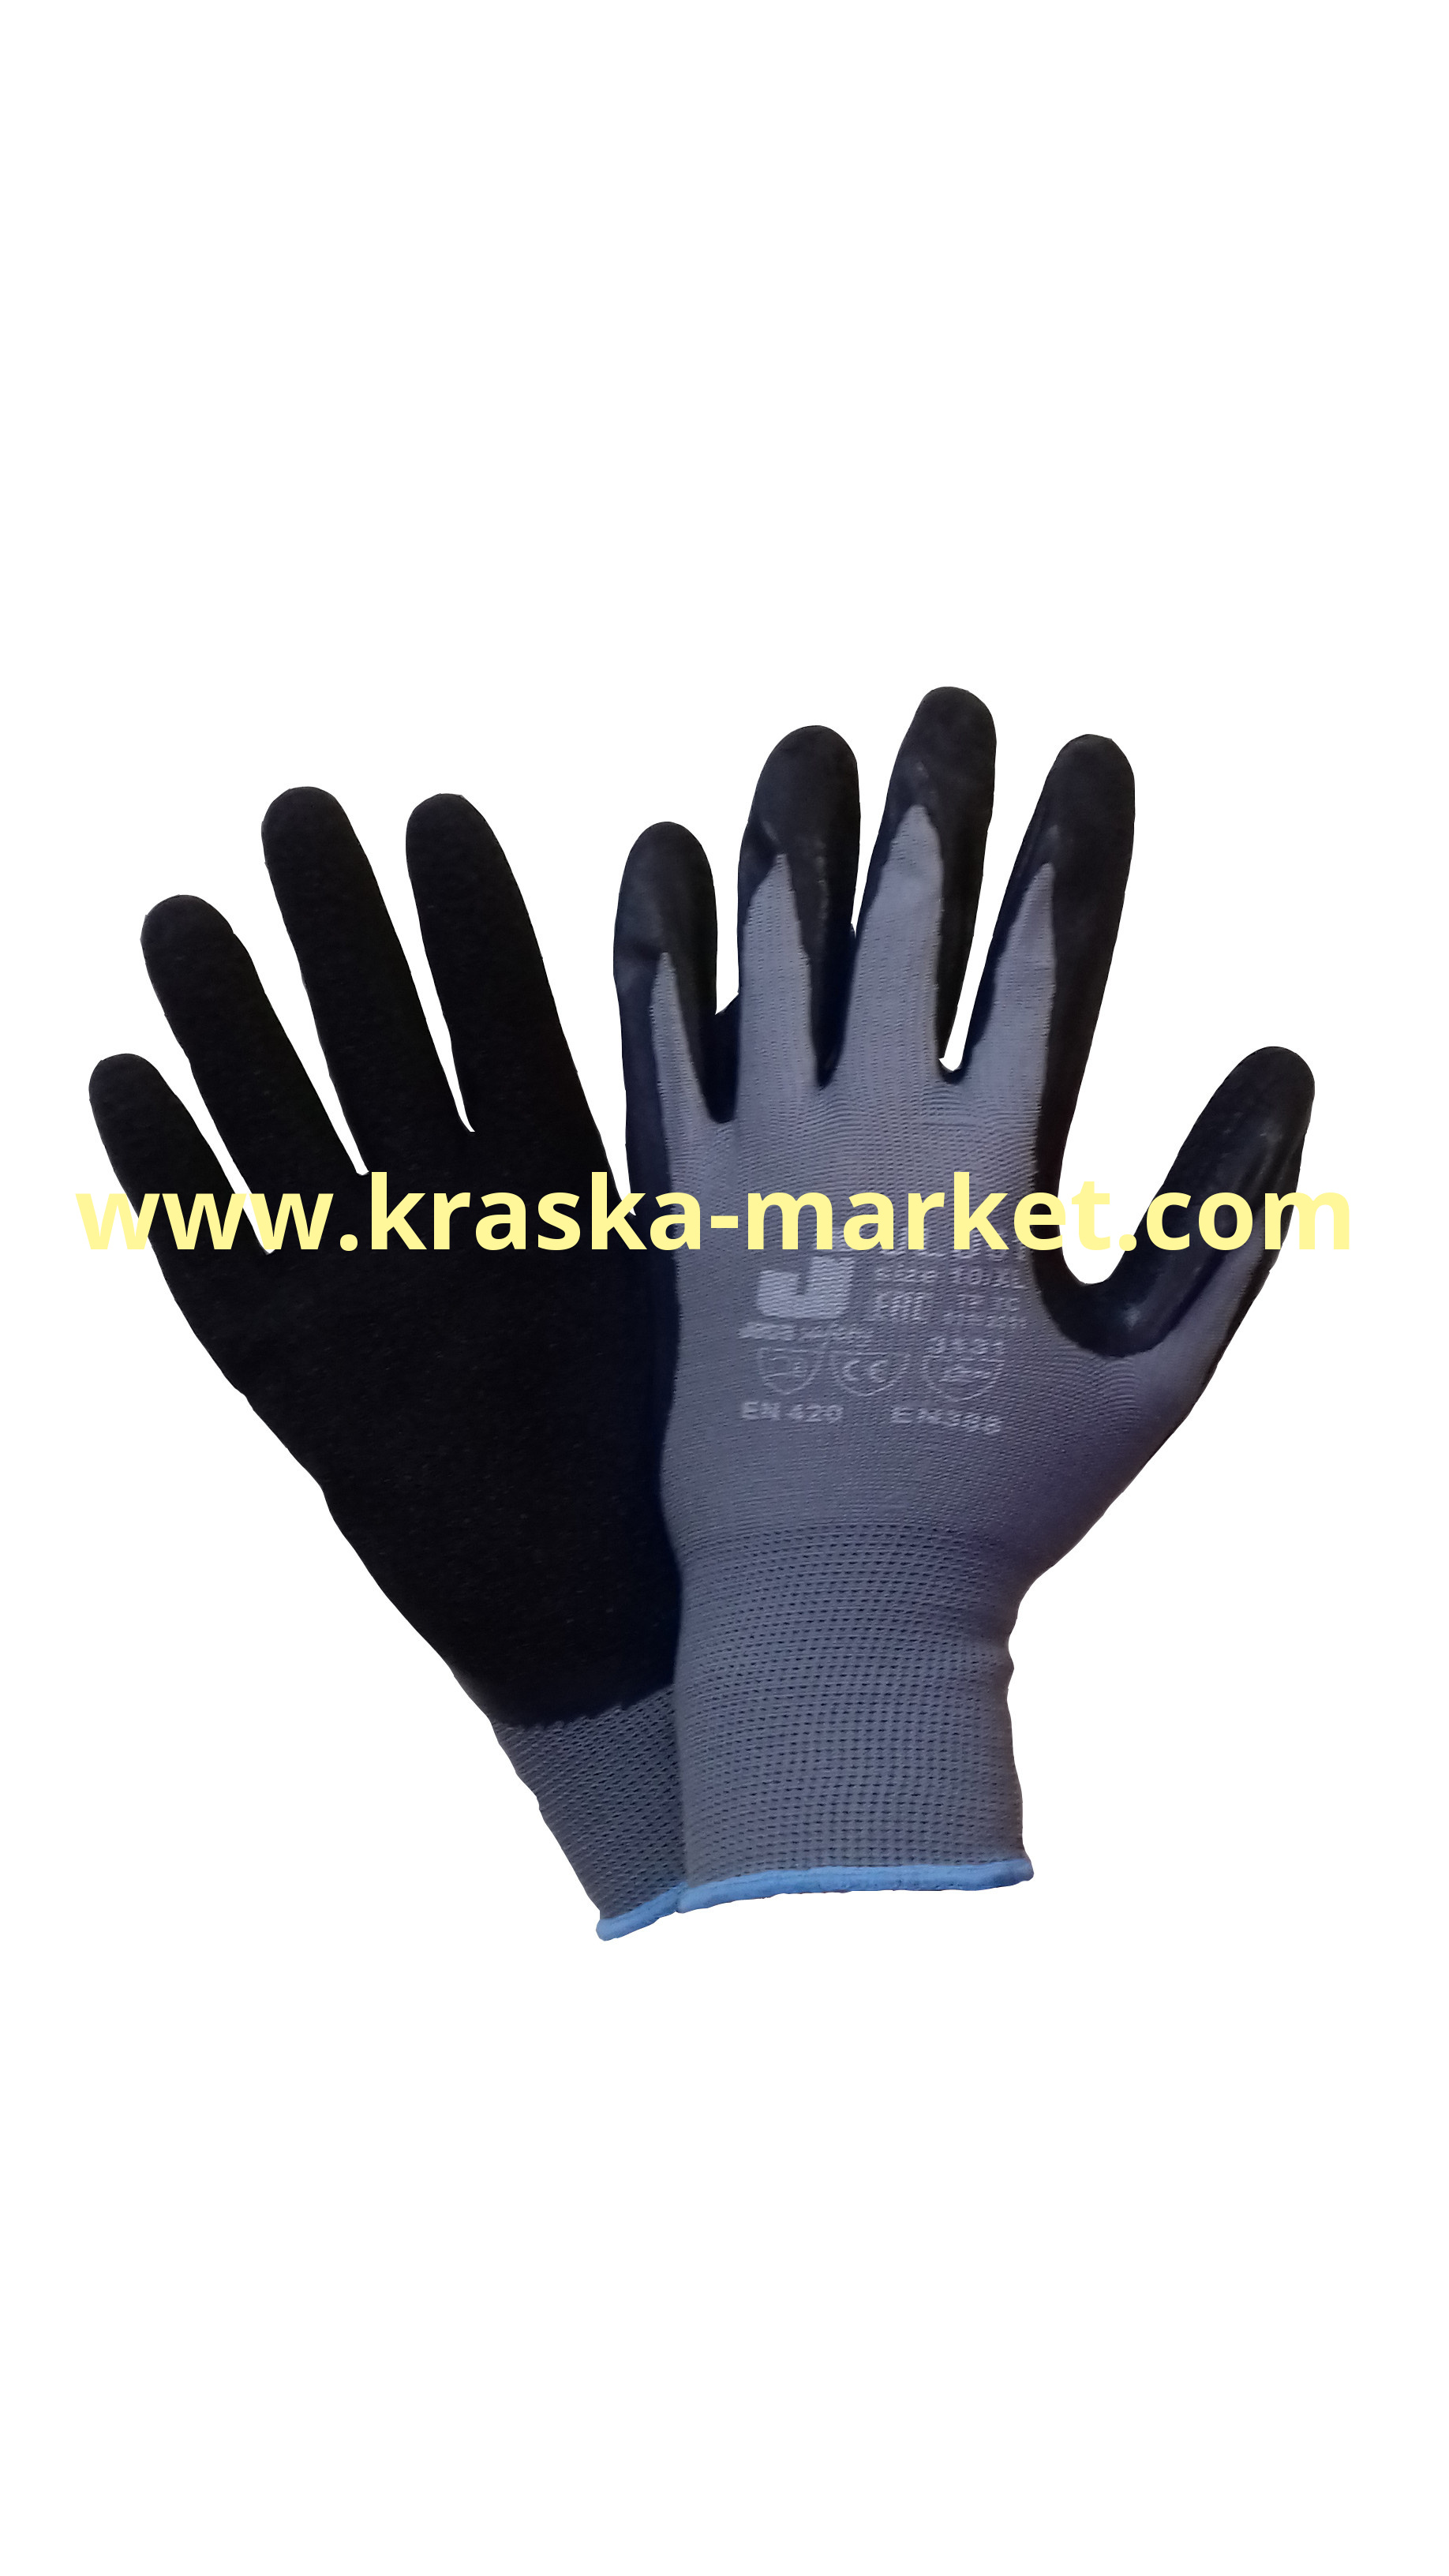 Защитные промышленные перчатки с рельефным латексным покрытием. Цвет: серый/черный. Размер: XL. Торговая марка: JetaPro.